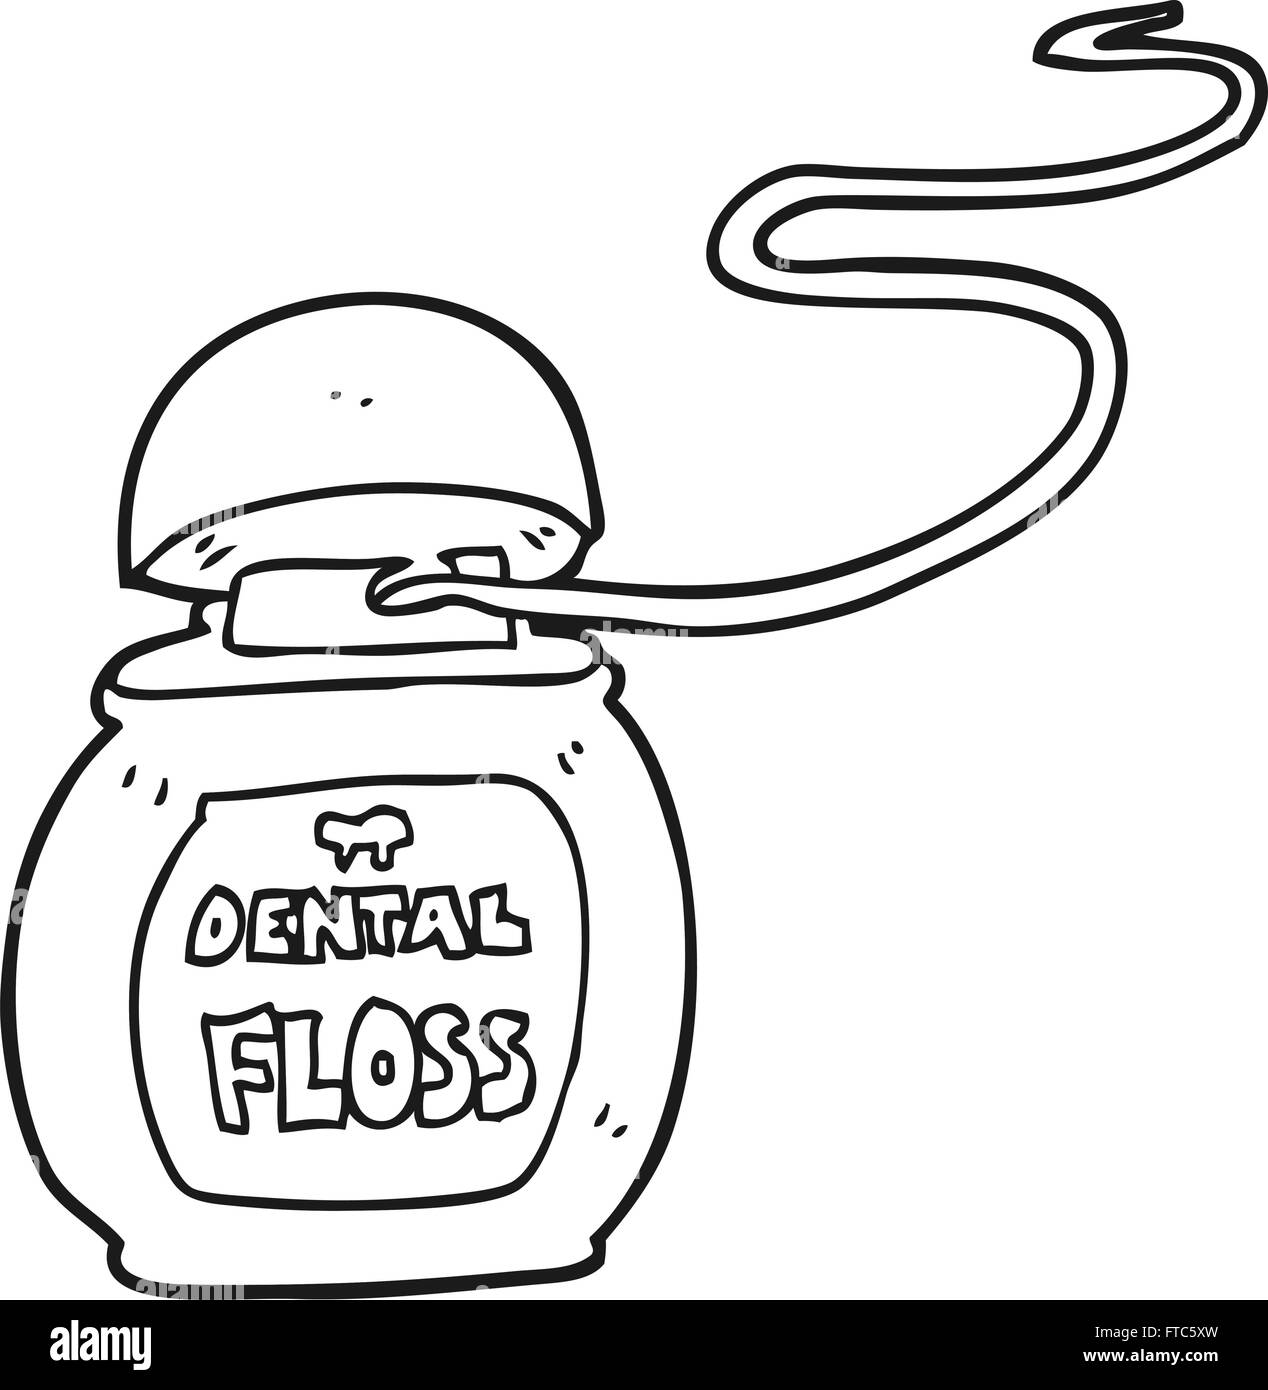 dental floss clipart